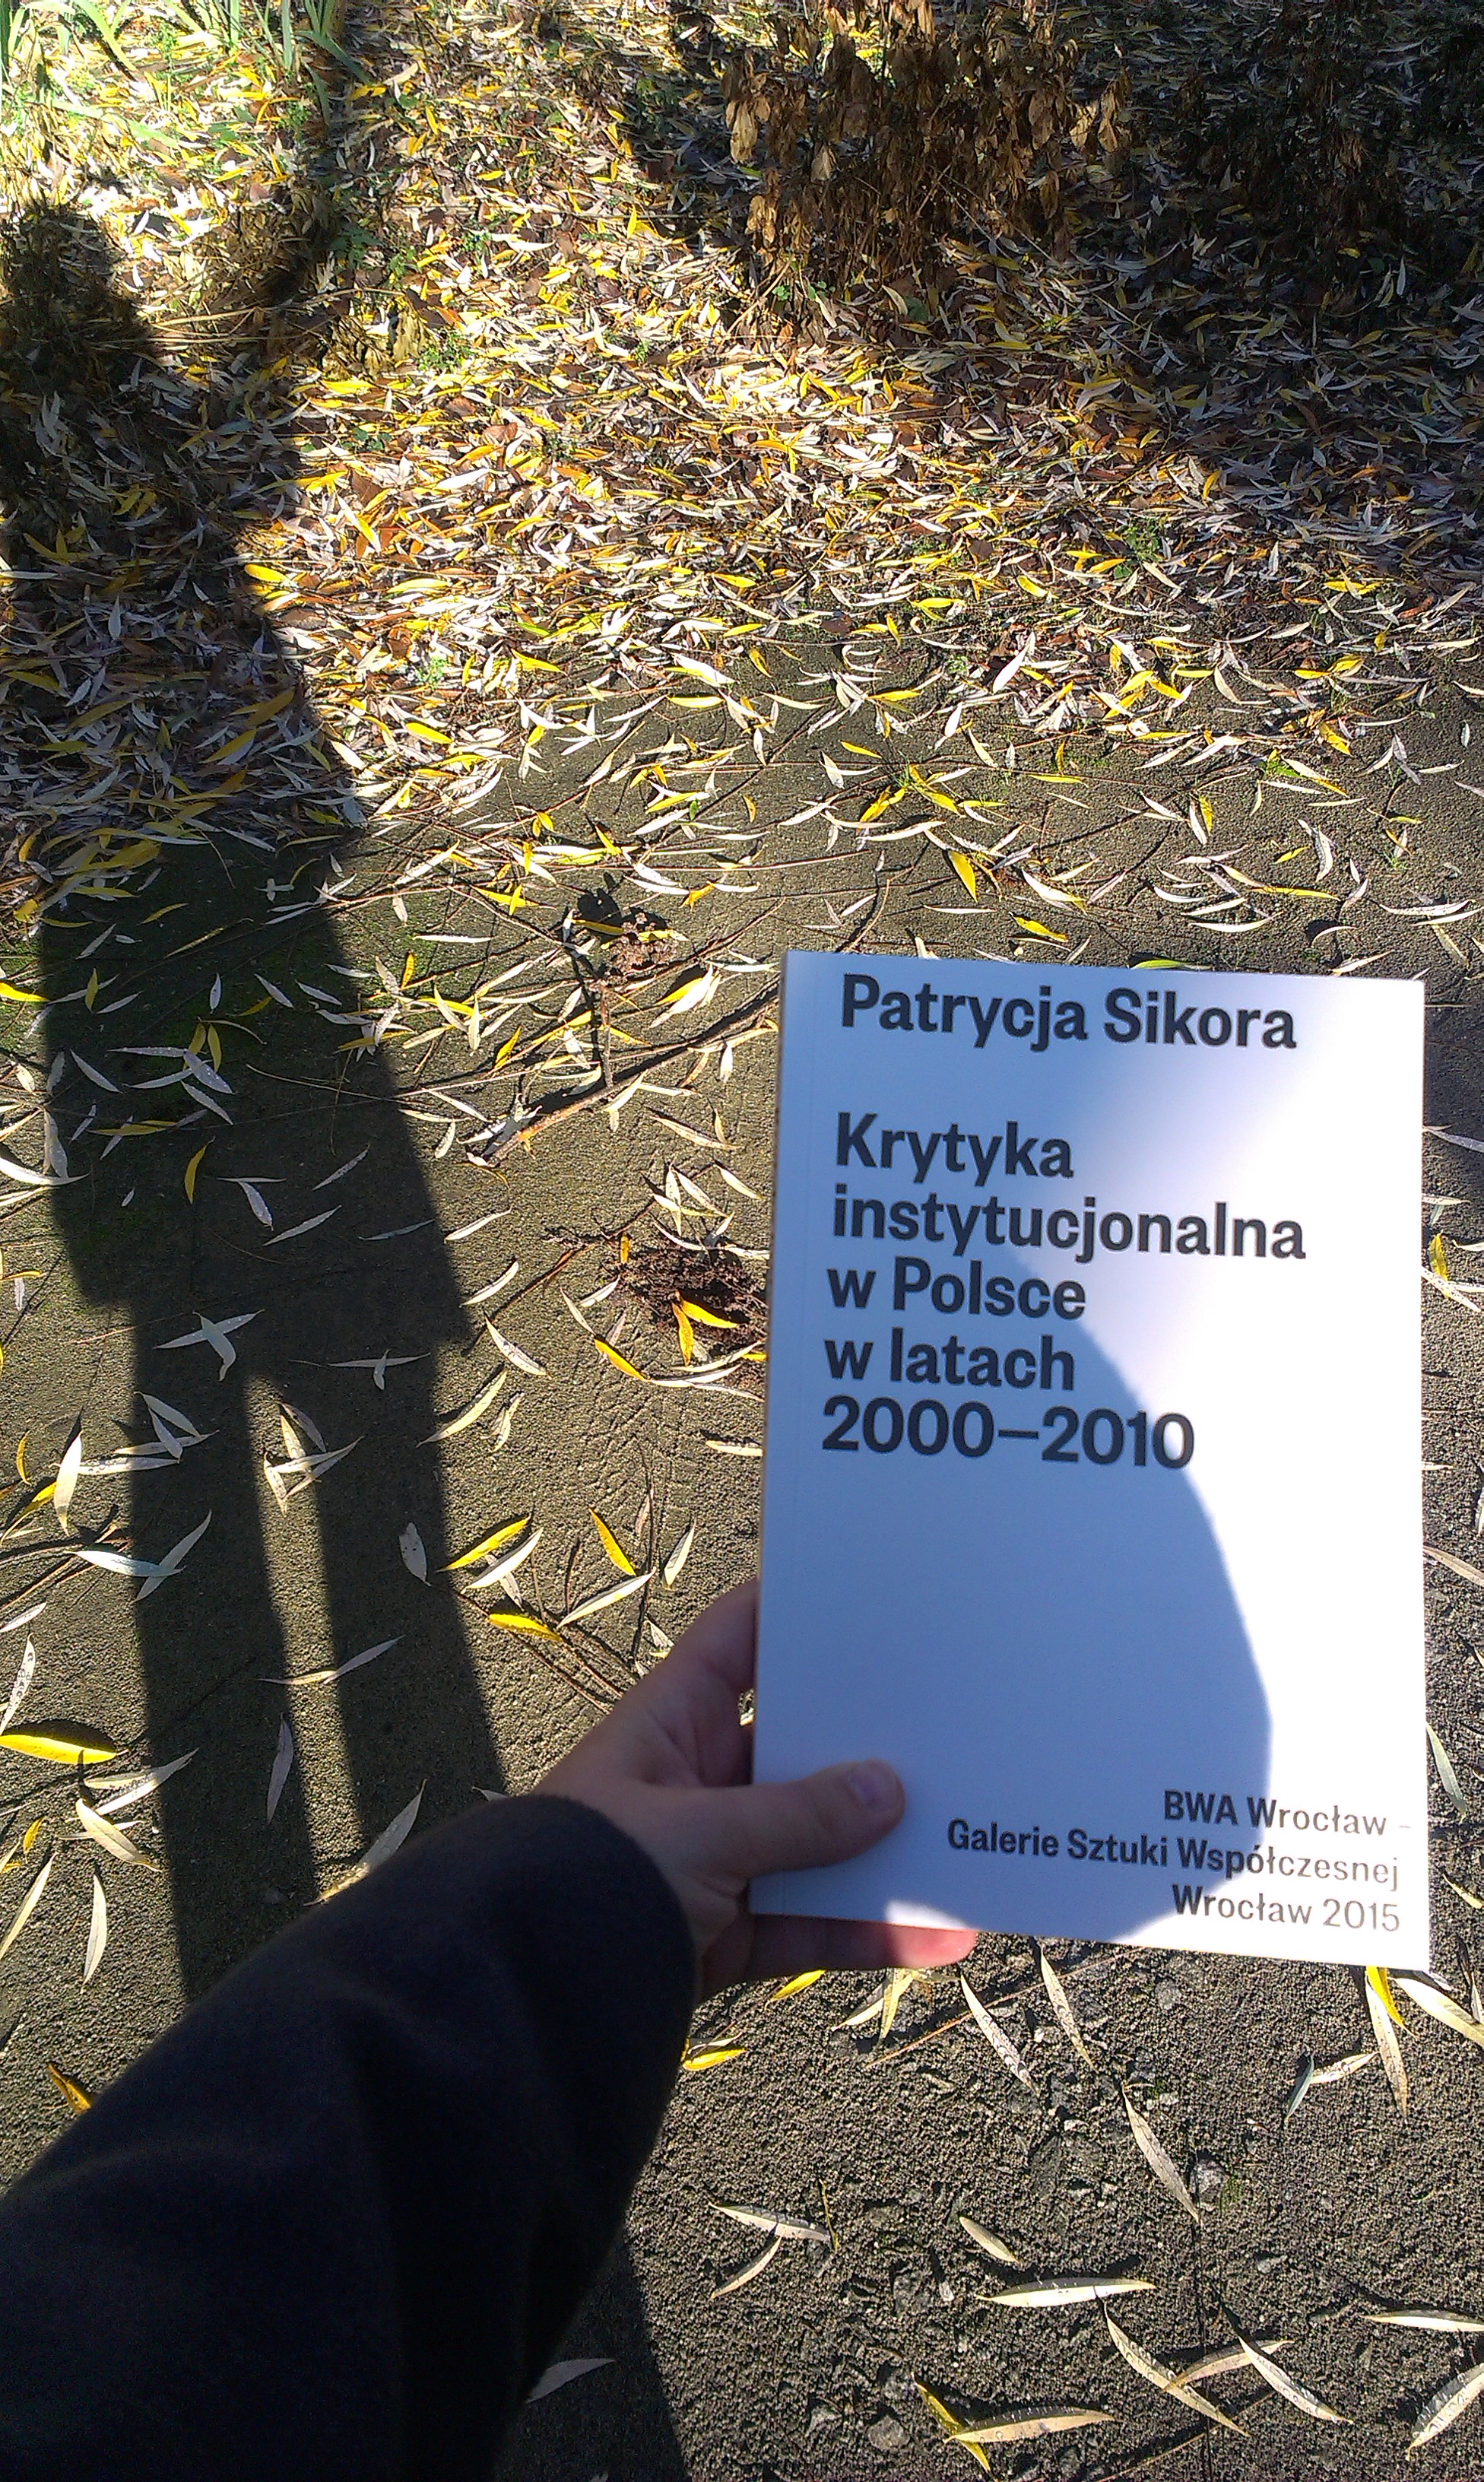 Krytyka instytucjonalna w Polsce w latach 2000-2010, fot. Patrycja Sikora